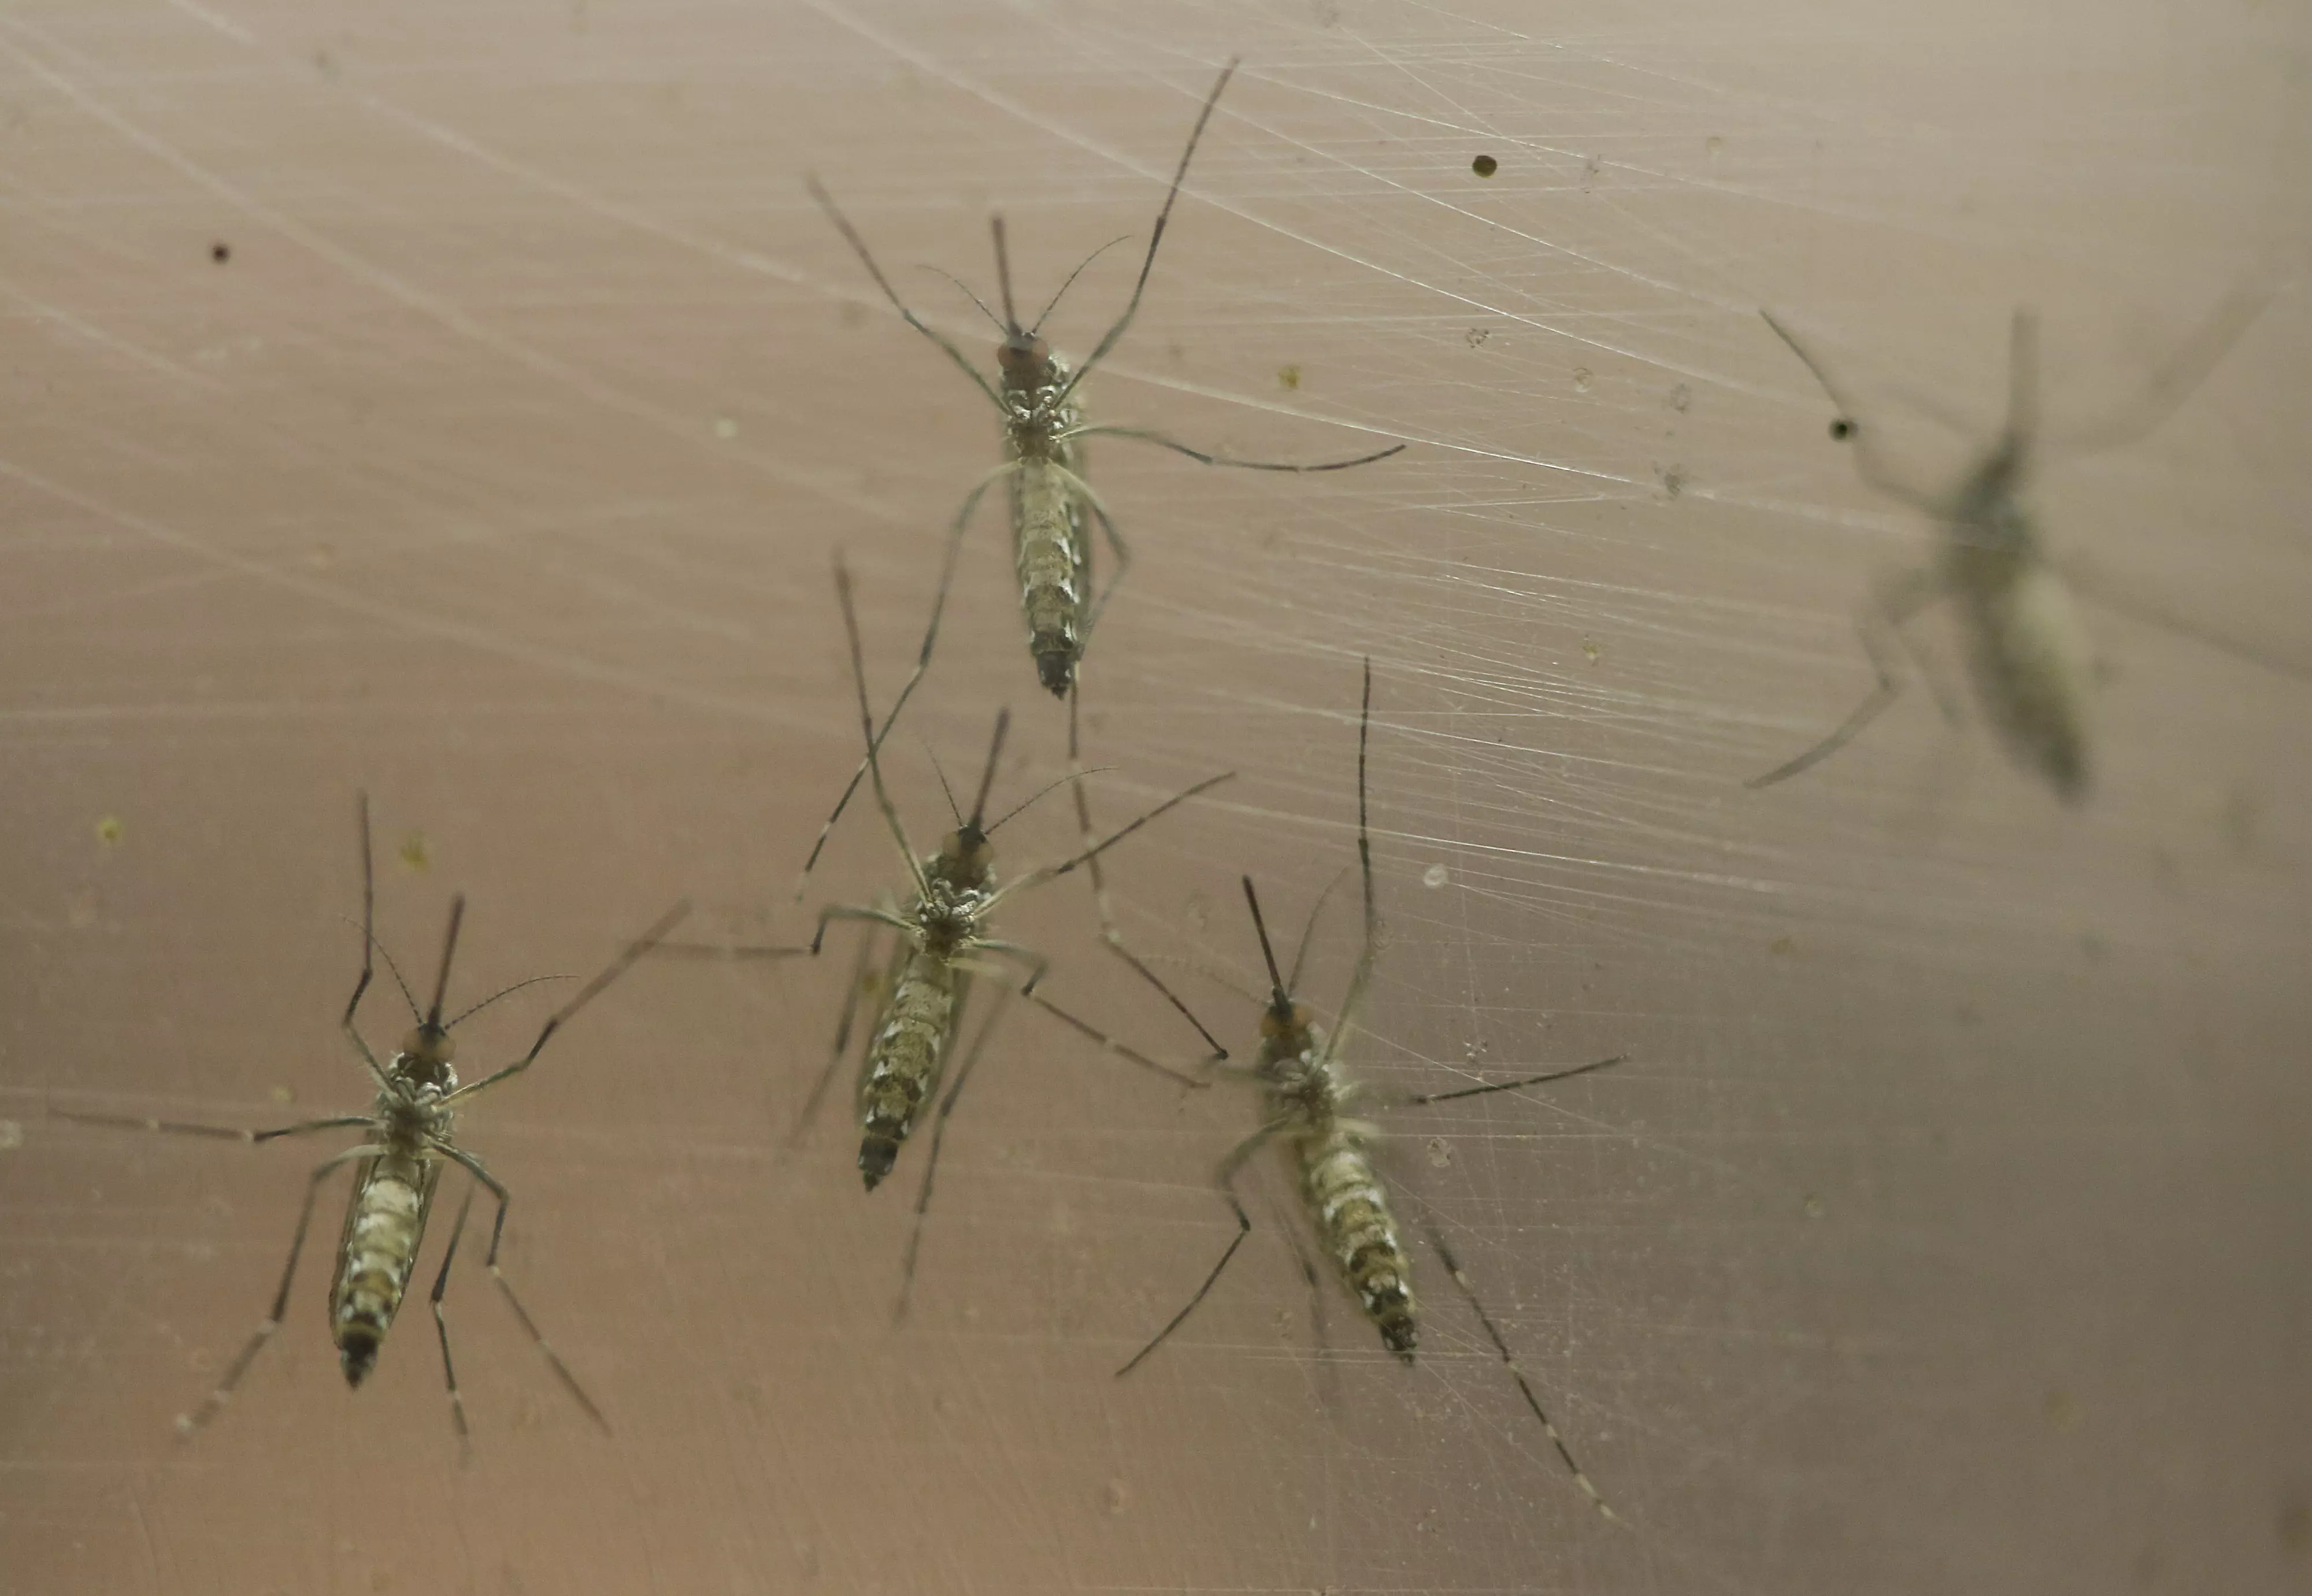 יתוש ממין אדס מצרי המעביר את הנגיף זיקה